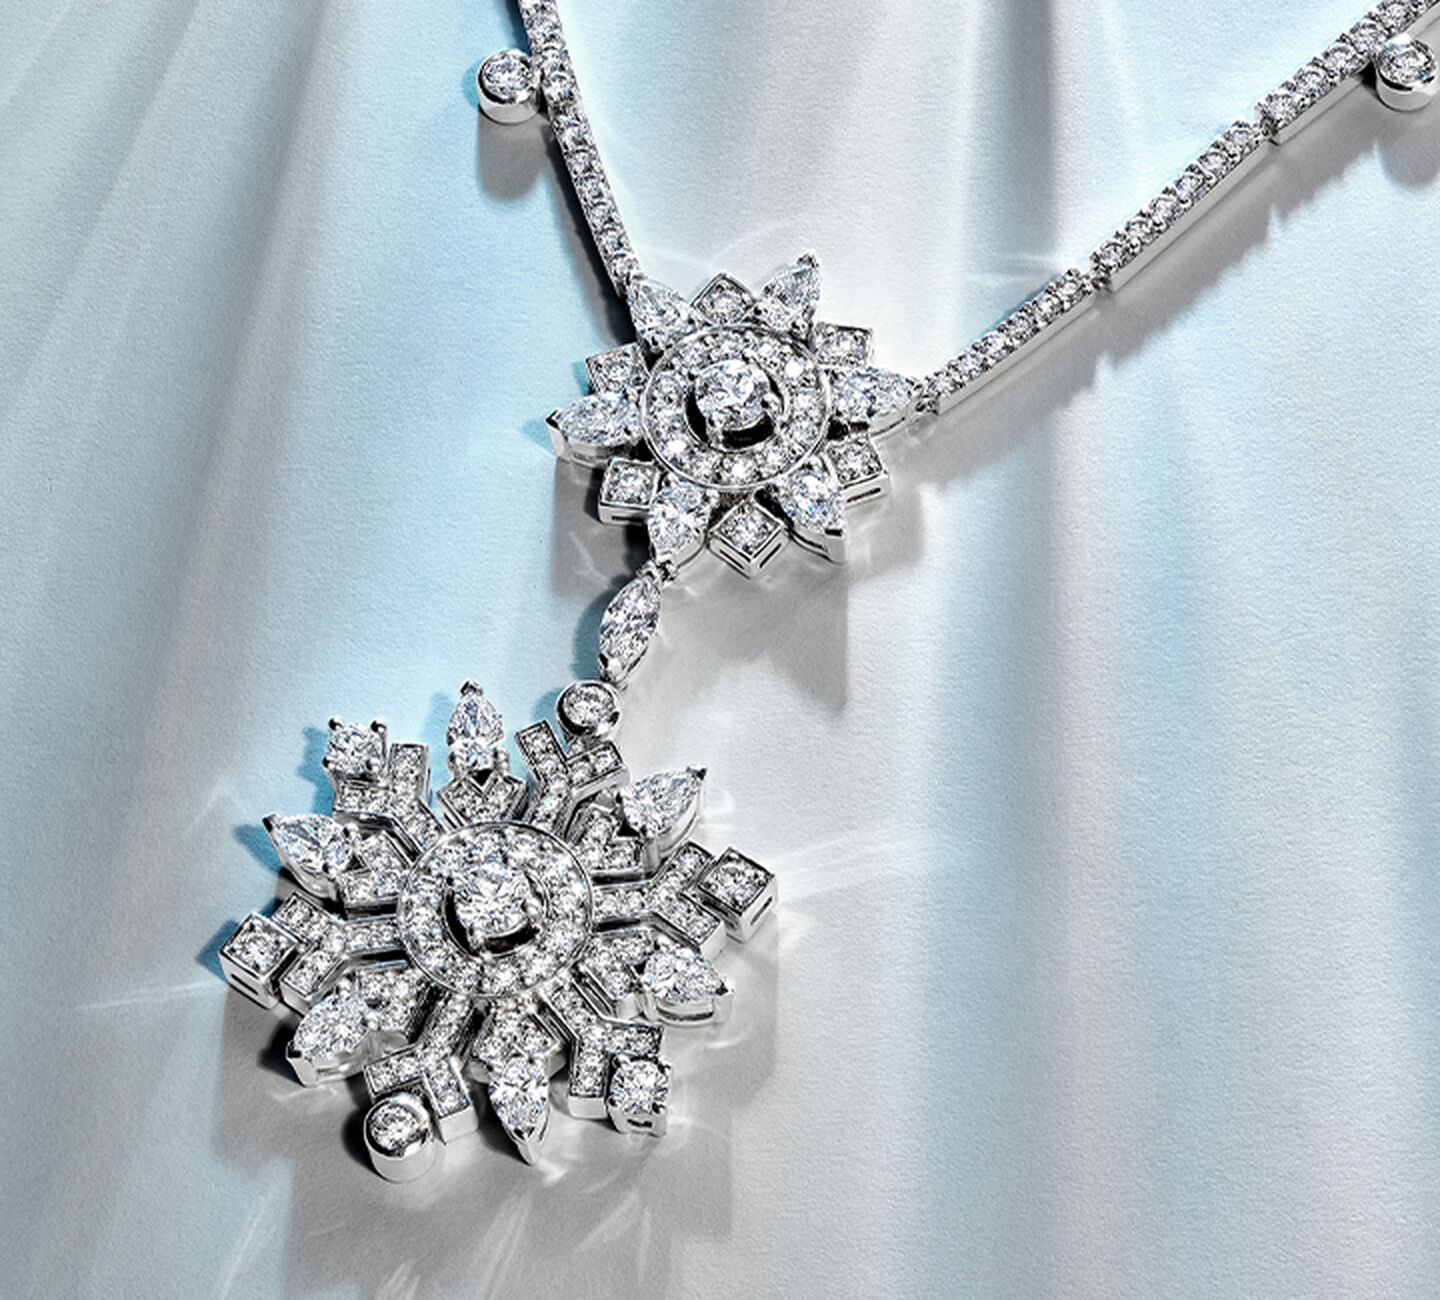 White gold and diamond snowflake pendant.